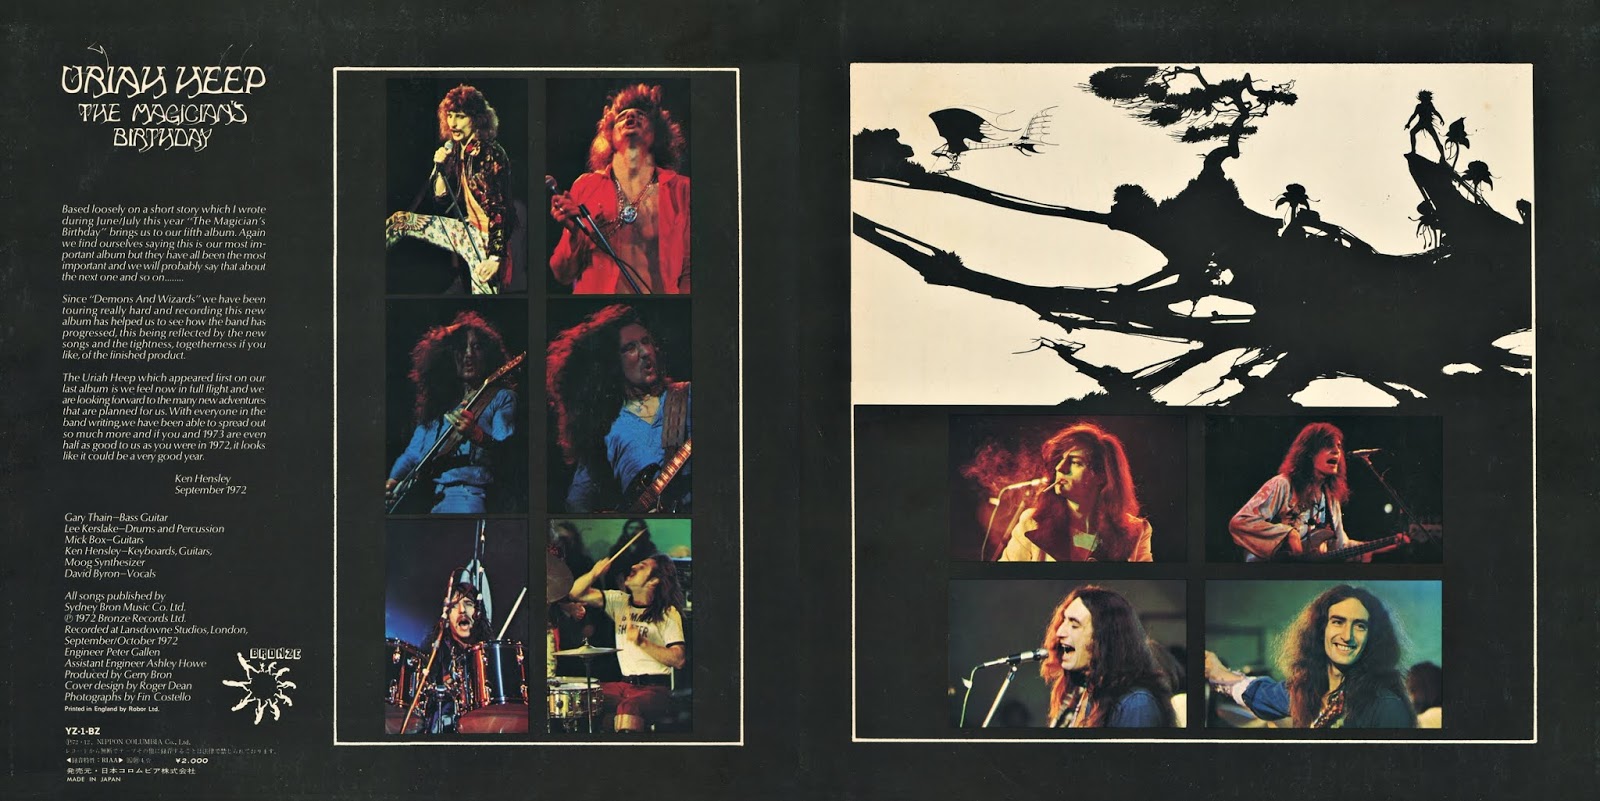 The magician s birthday. Uriah Heep Live 1973 обложка. Uriah Heep the Magicians Birthday 1972 обложка. Uriah Heep the Magician's Birthday 1972. Uriah Heep 1972 - 1973.